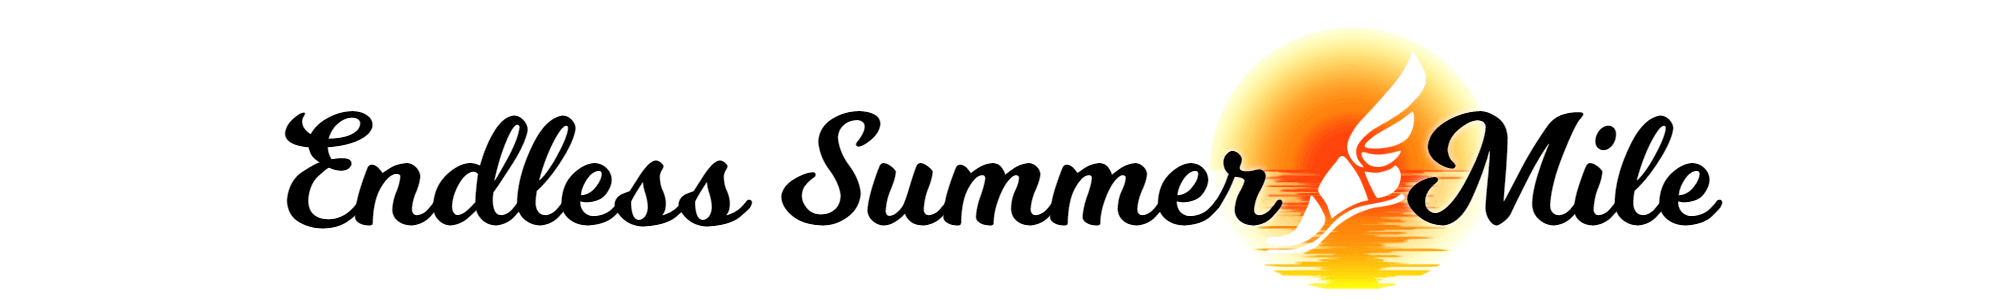 Endless Summer Logo